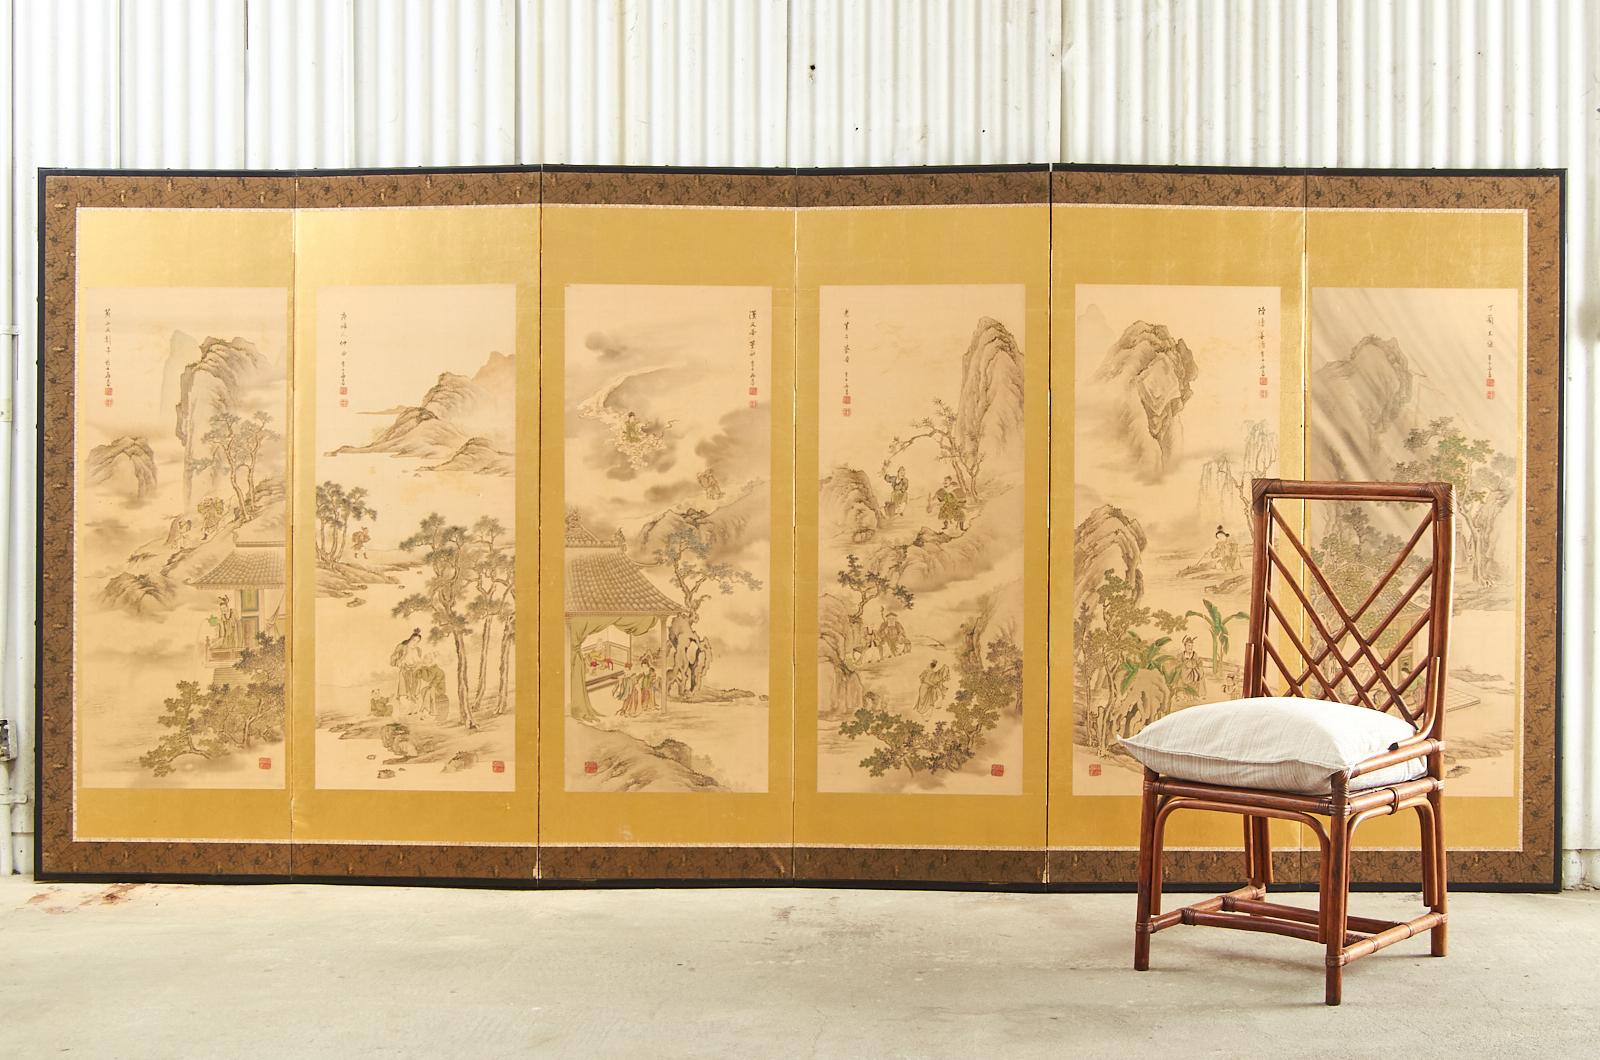 Beeindruckendes Paar japanischer Paravents aus der Taisho-Periode meiji. Jede der sechs Tafeln zeigt ein Bild aus den 24 Vorbildern der konfuzianischen Geschichten, die von Guo Jujing während der Yuan-Dynastie verfasst wurden. Tusche und natürliche